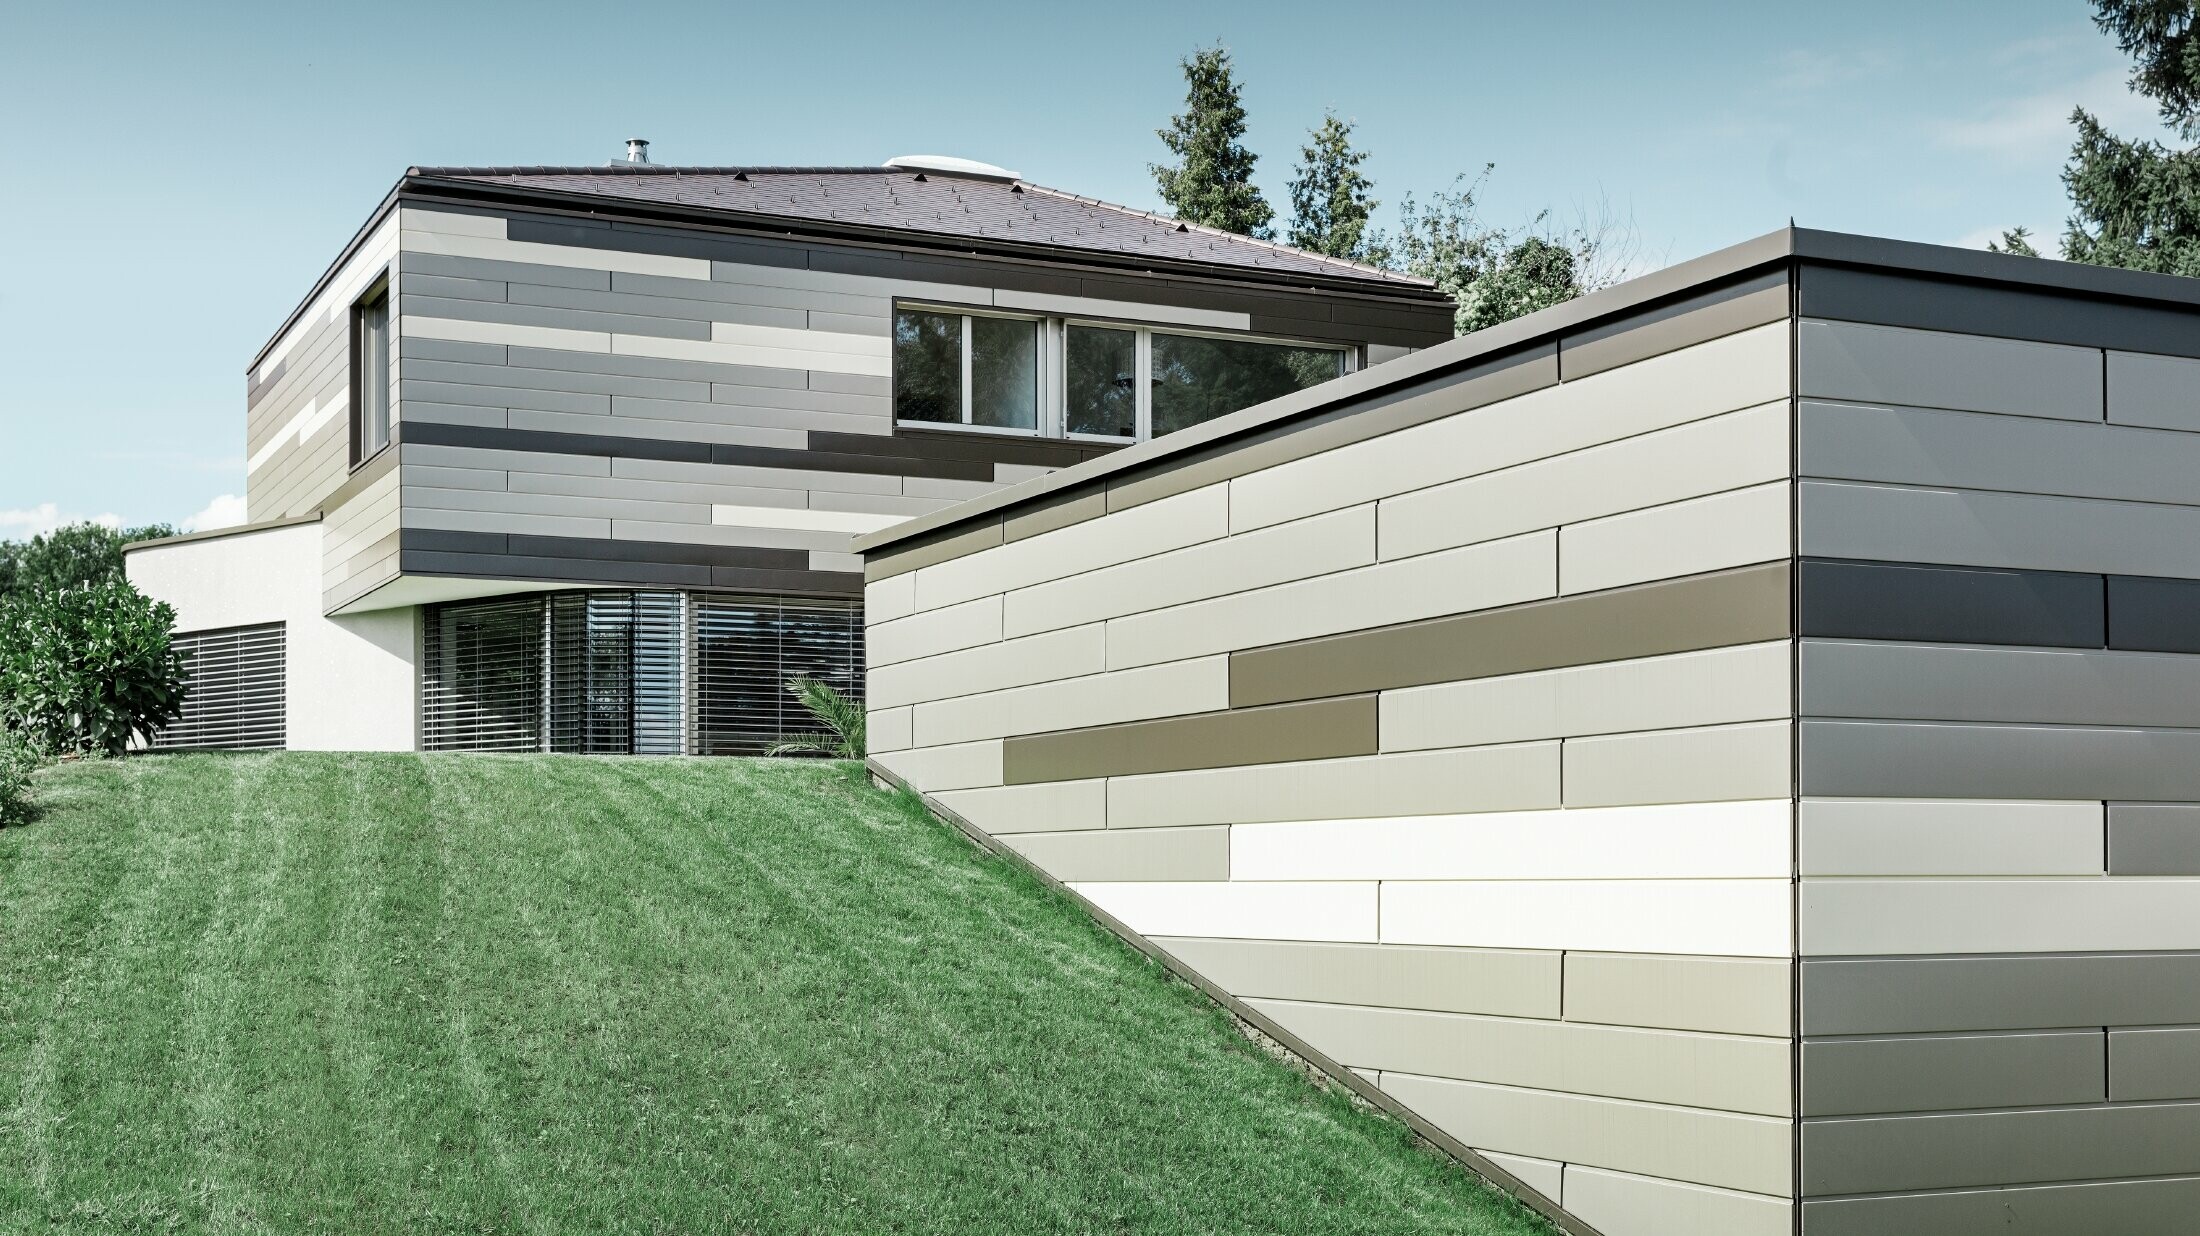 Sodobna enodružinska z ravno streho in pokrito teraso z individualno oblikovano aluminijasto fasado iz elementov PREFA Siding v rjavi, bronasti in slonokoščeni barvi